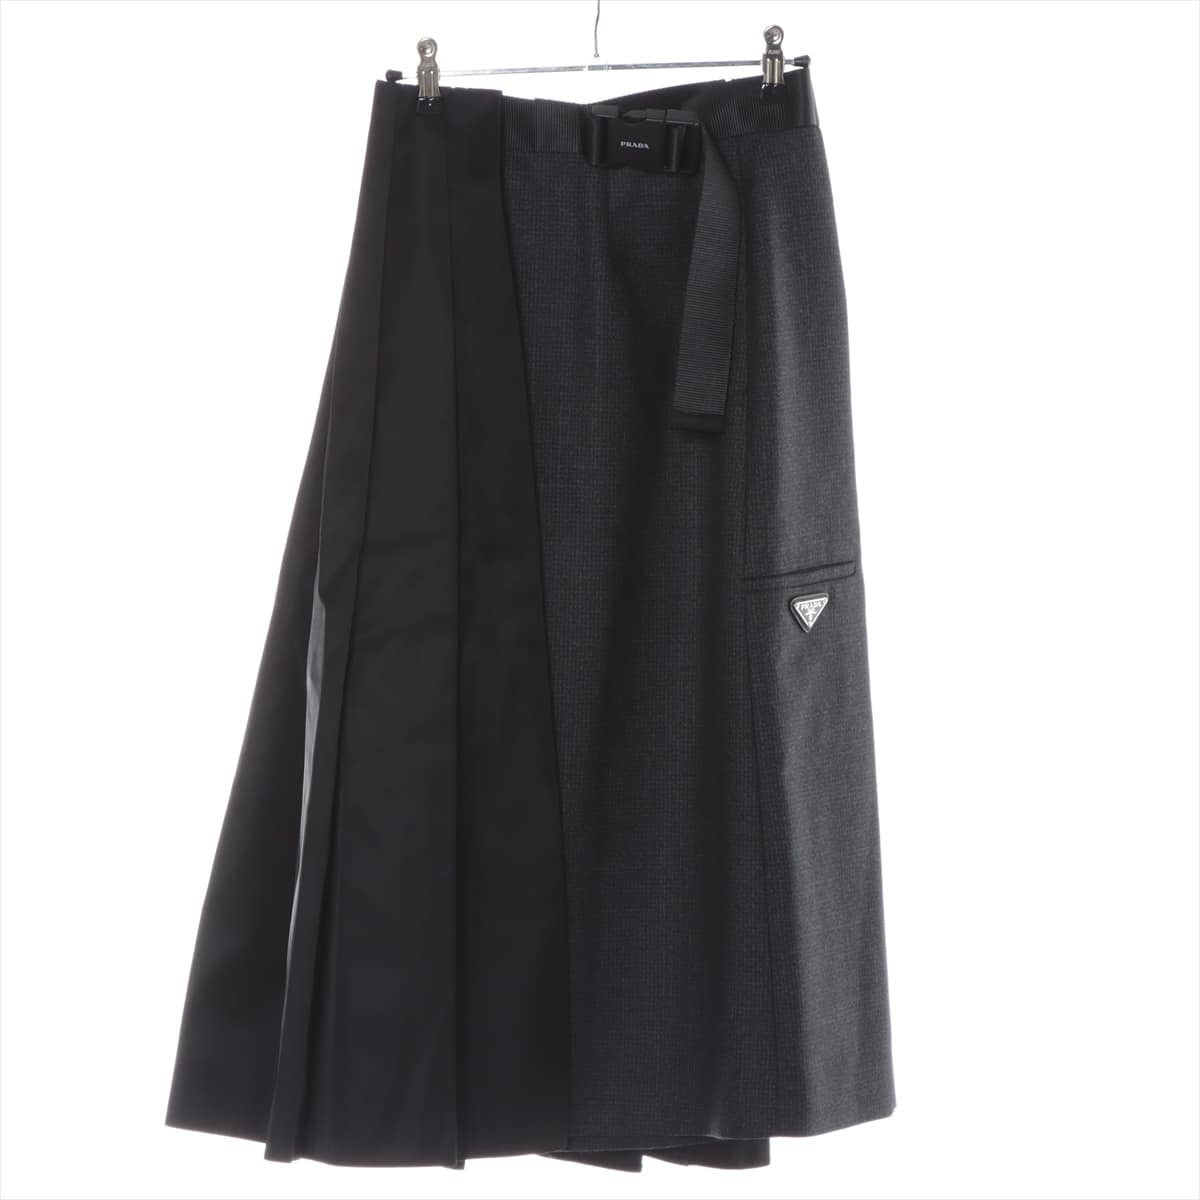 Prada 21 years Wool & nylon Skirt 38 Ladies' Black x Gray  P1998H Re Nylon